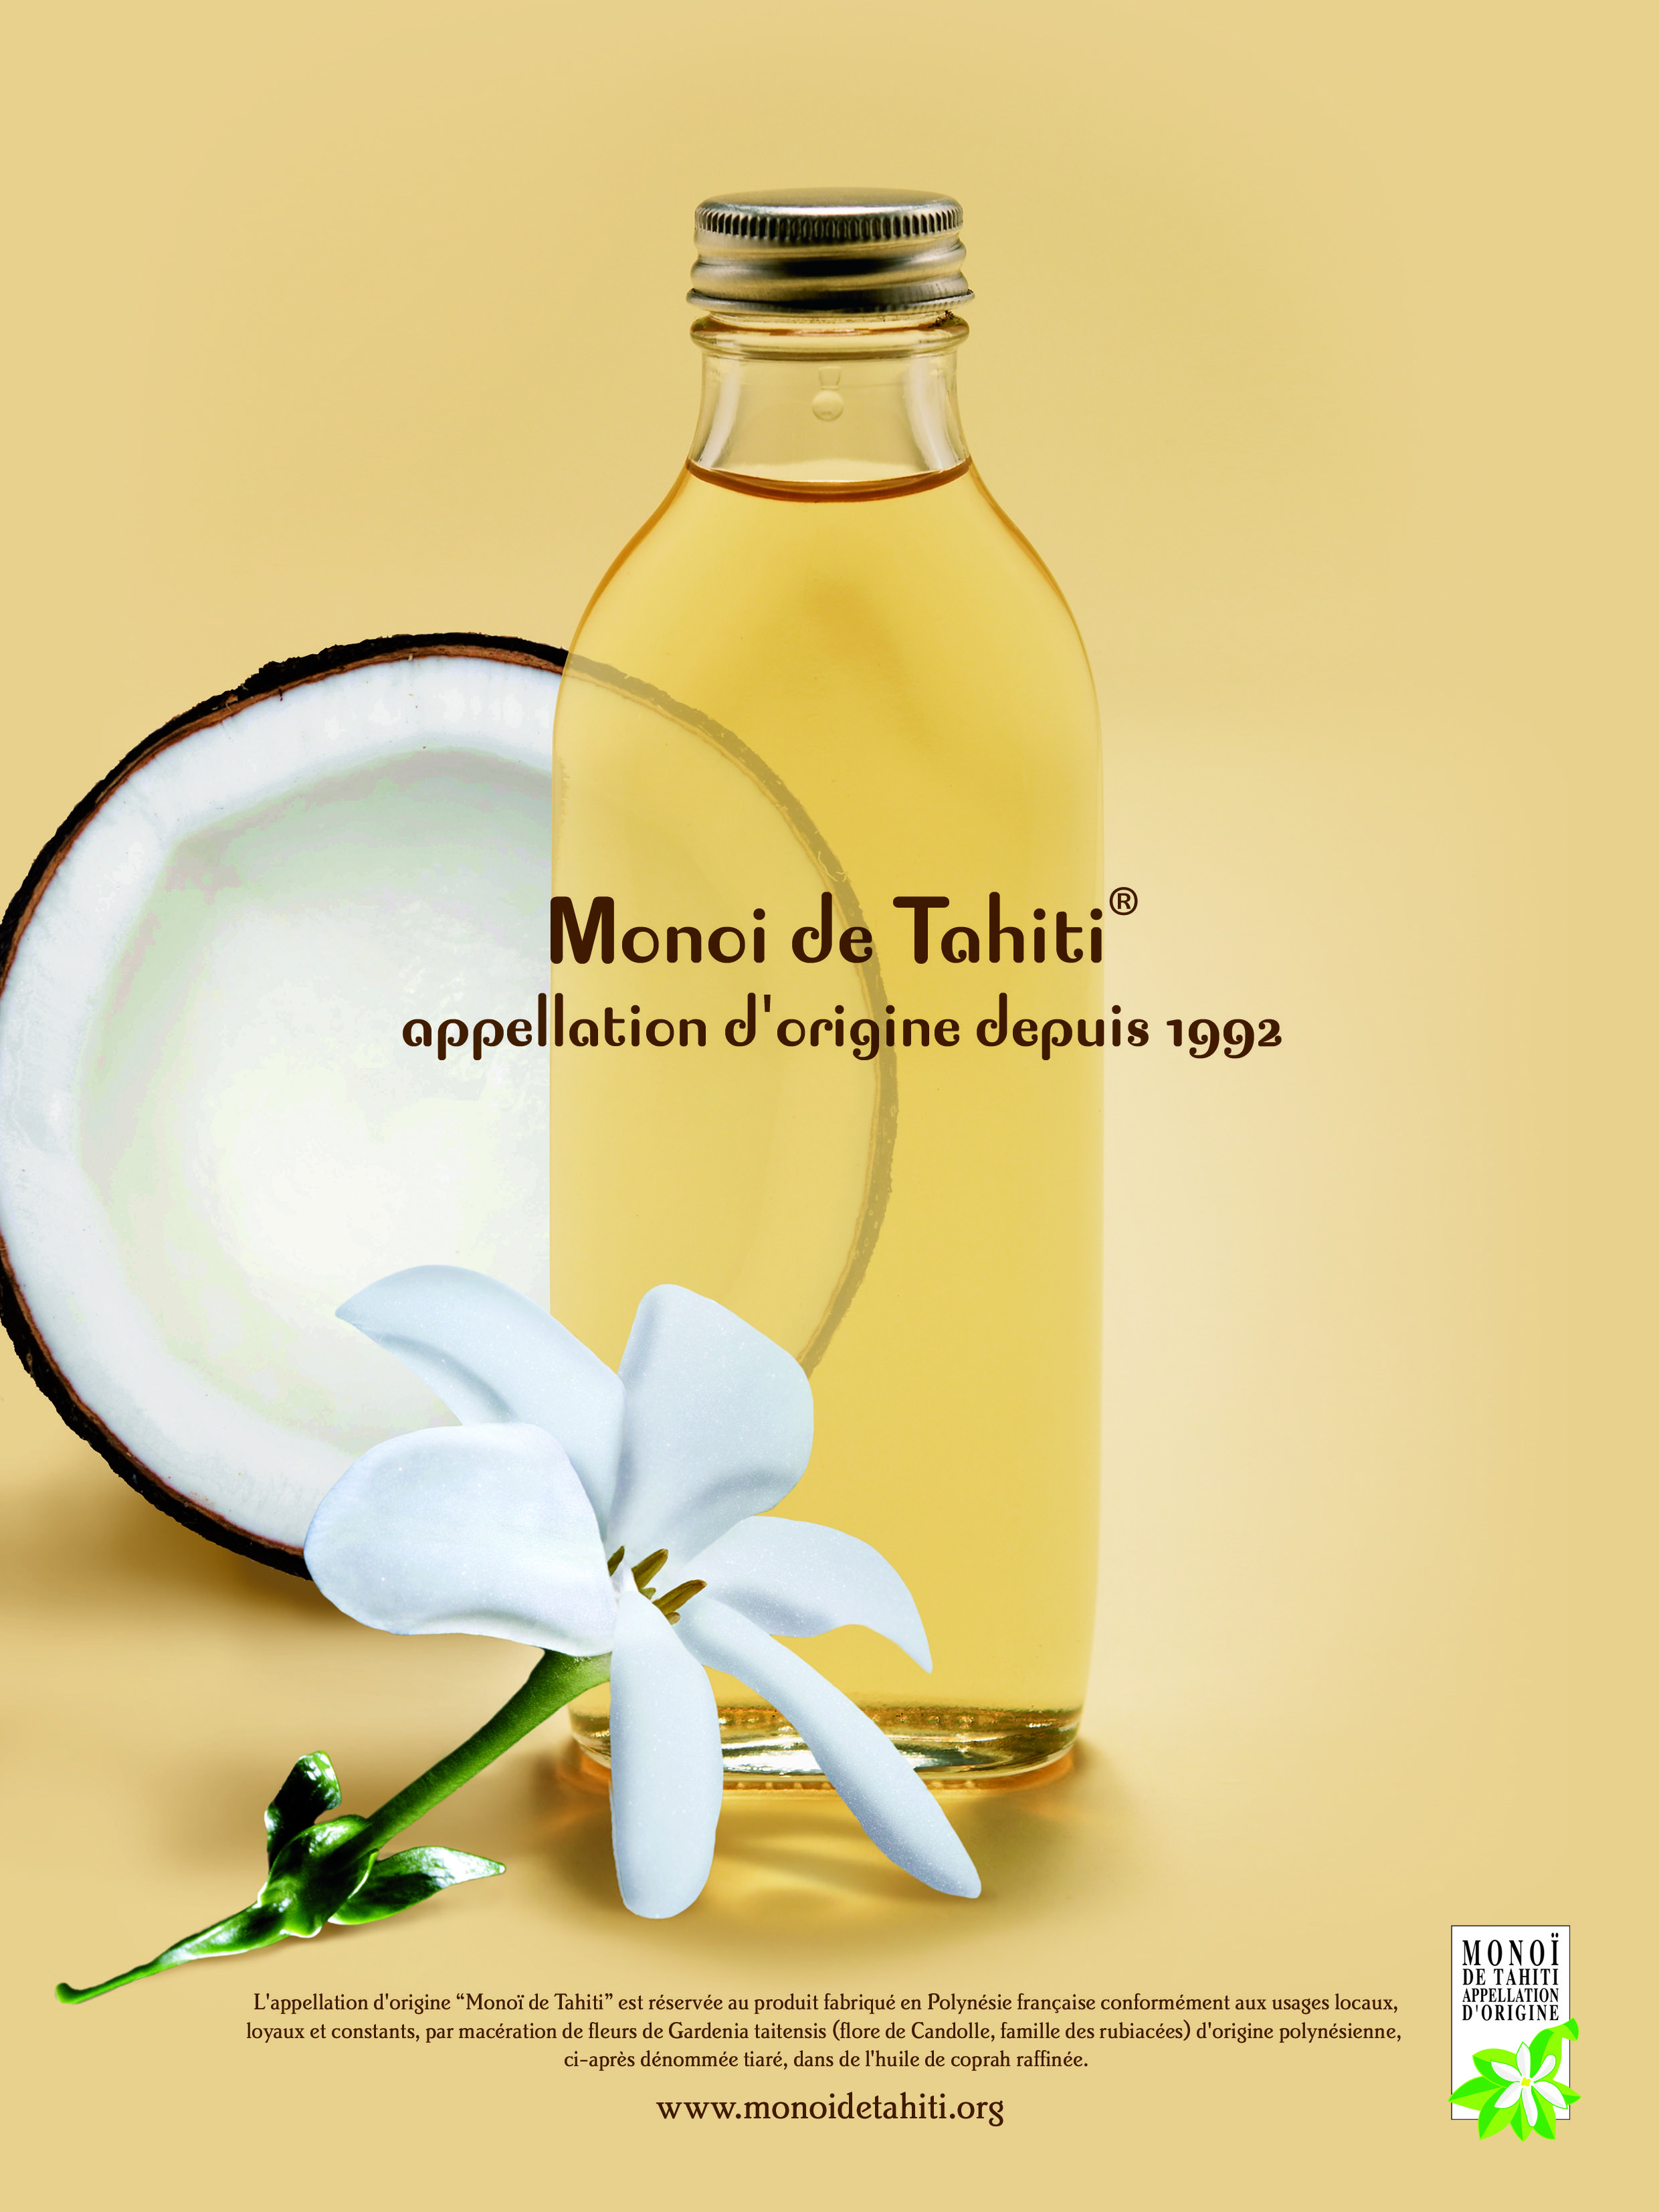 In 2022, Monoï de Tahiti will celebrate the 30th anniversary of its appellation of origin